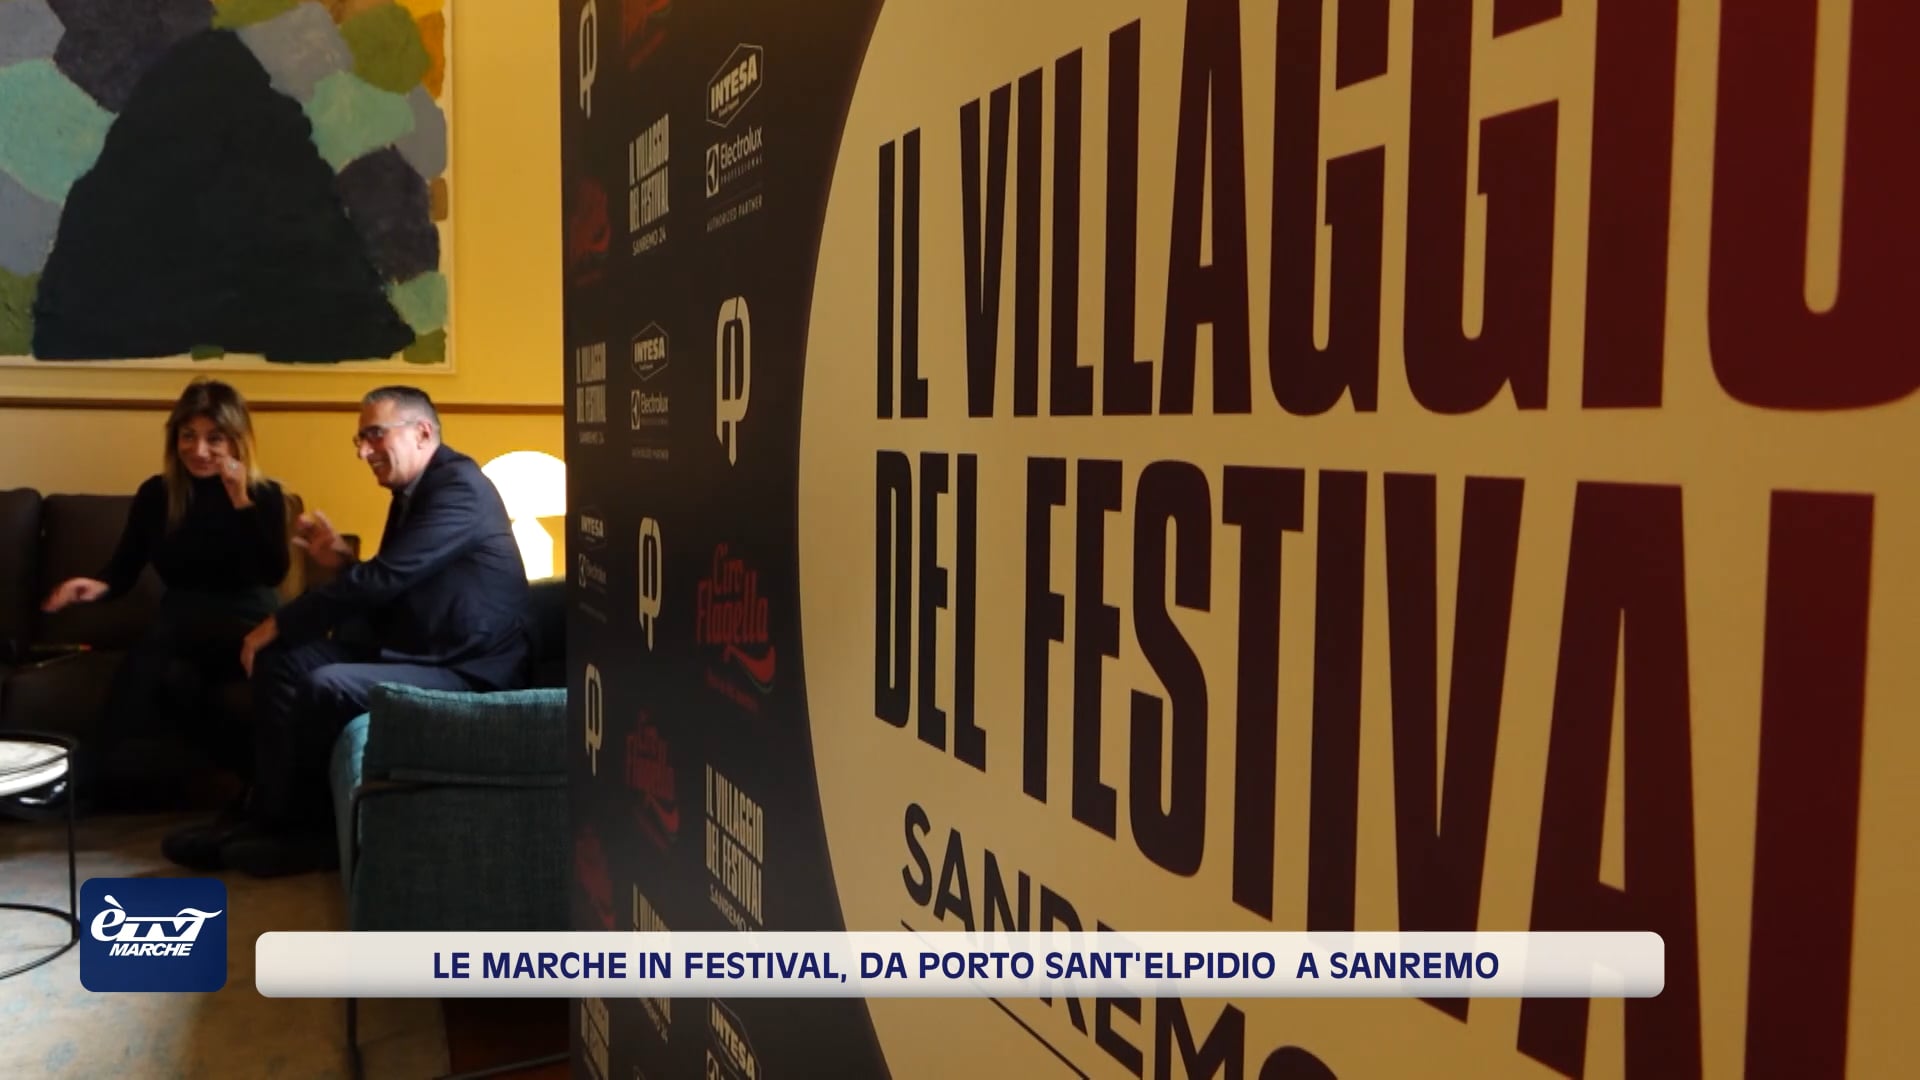 Le Marche in Festival. Da Porto Sant'Elpidio a Sanremo - VIDEO